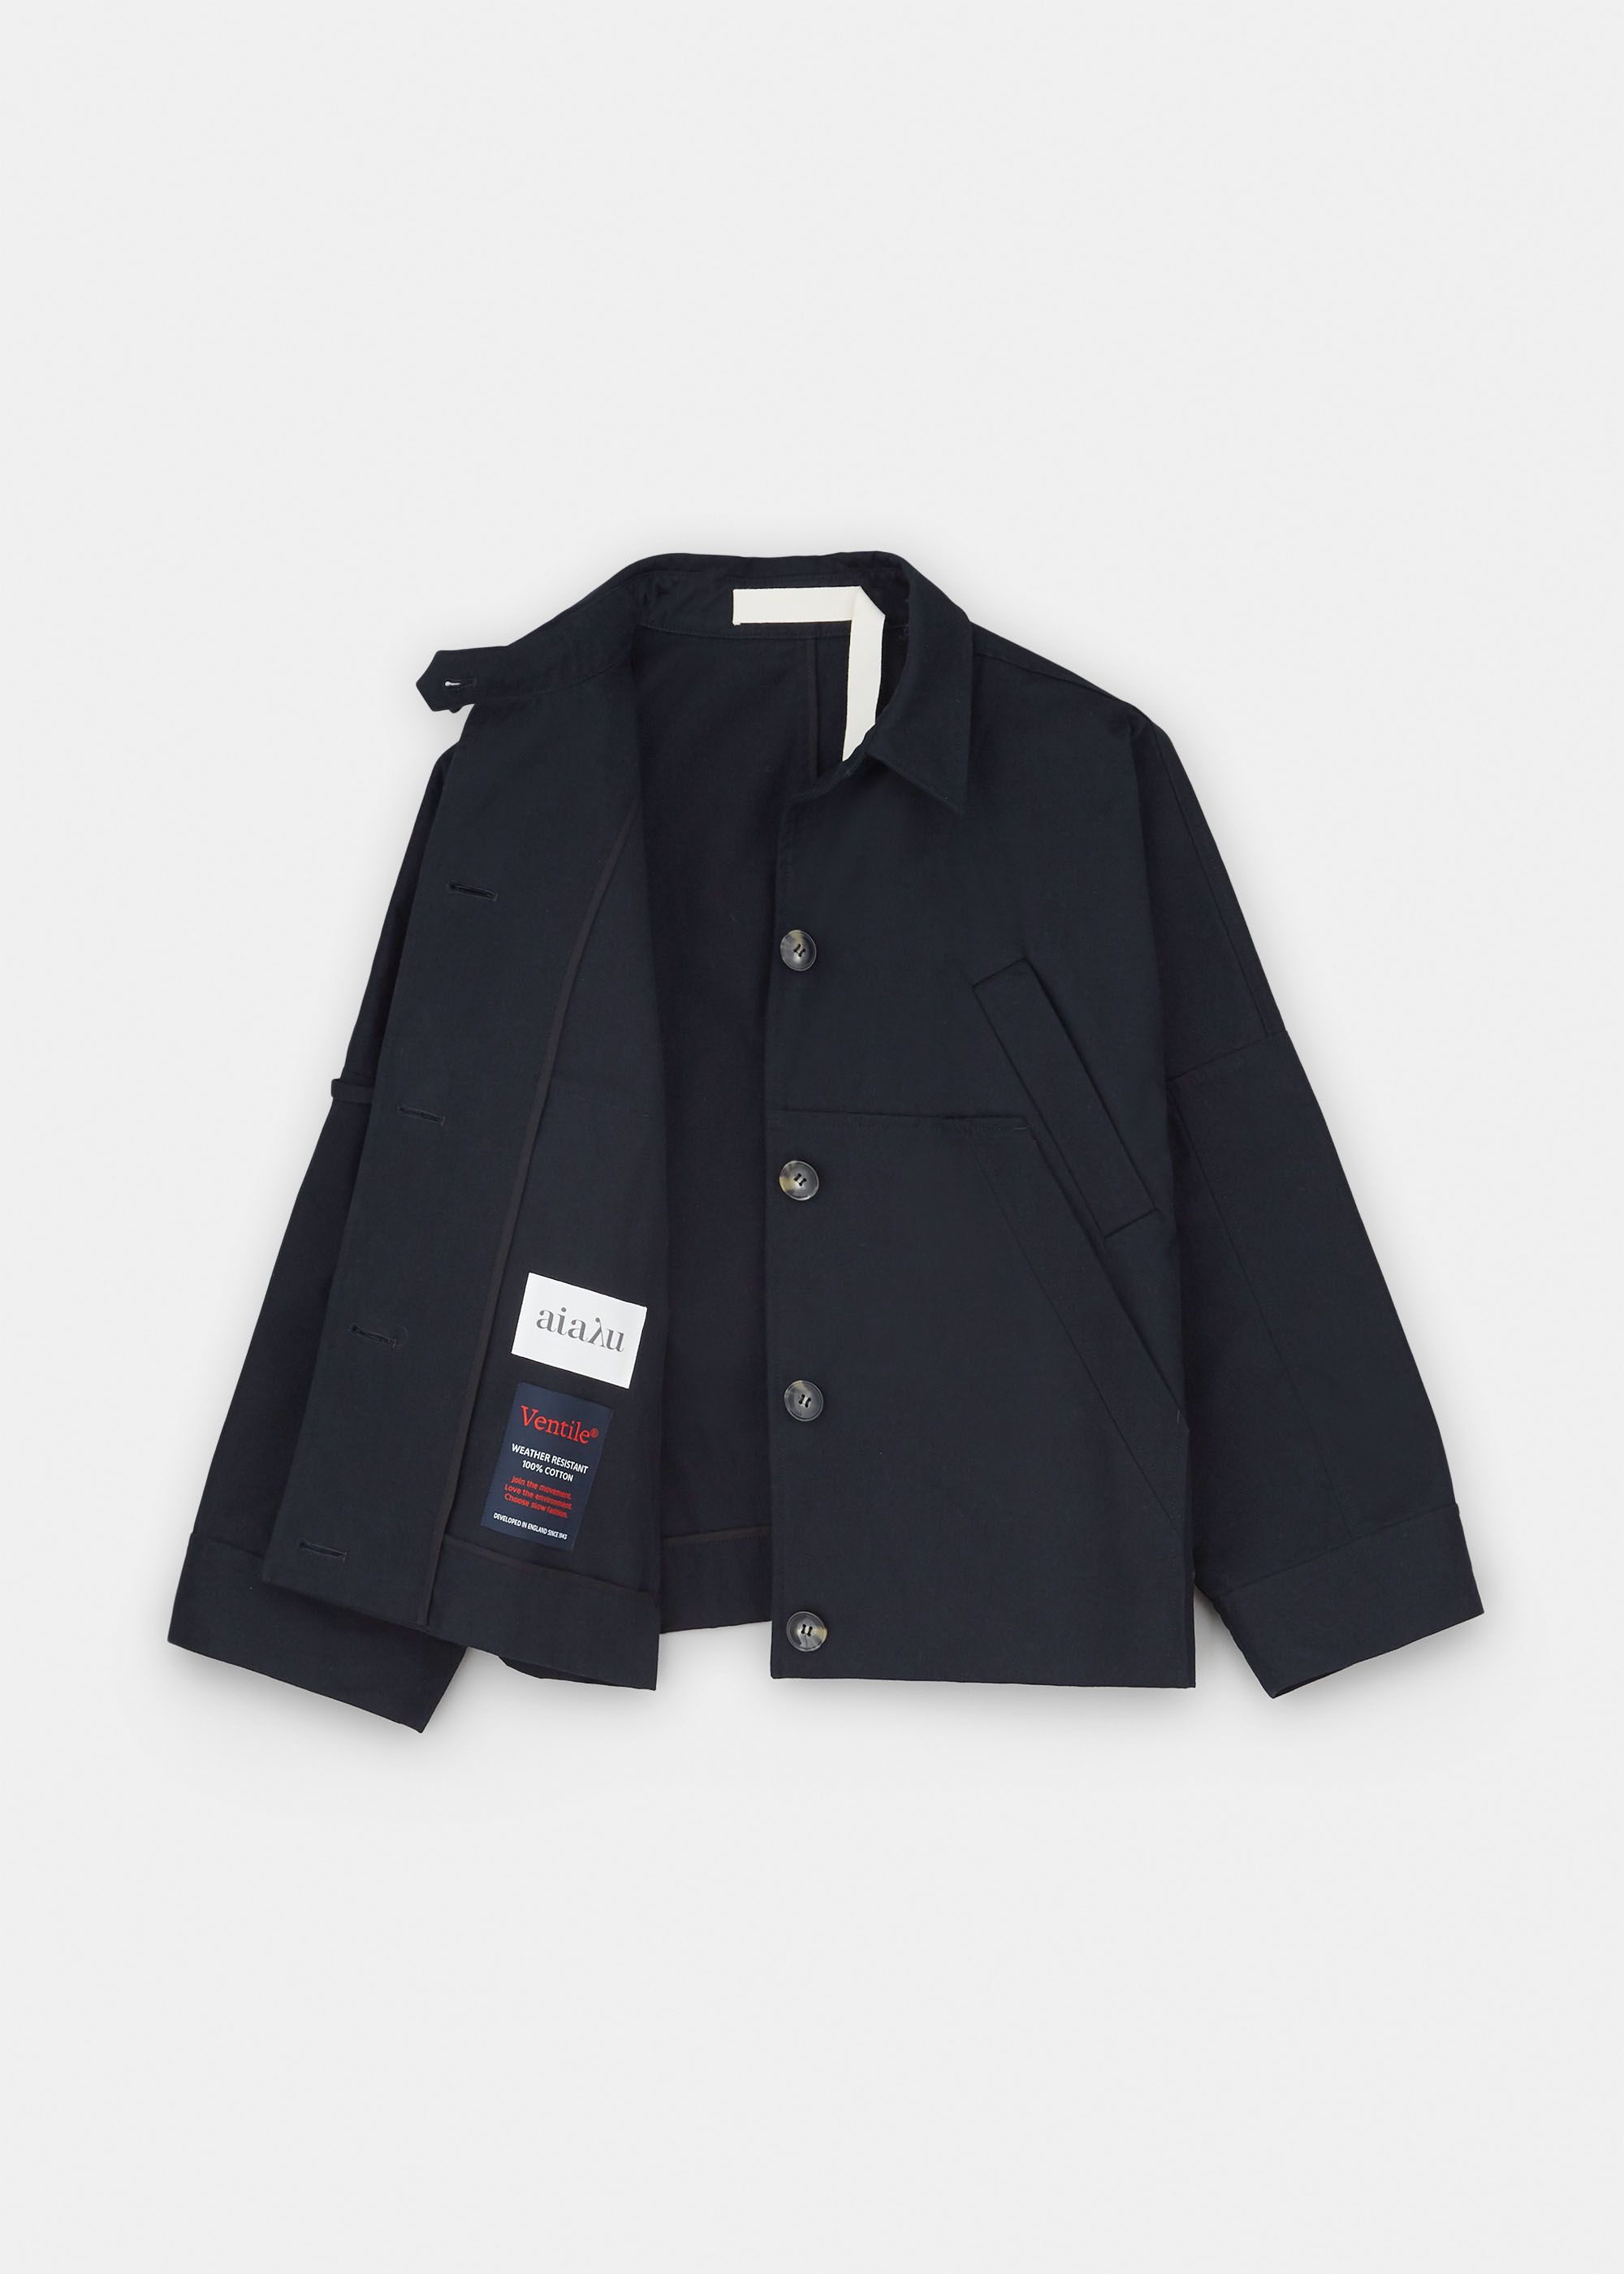 Outerwear - Jules ventile jacket